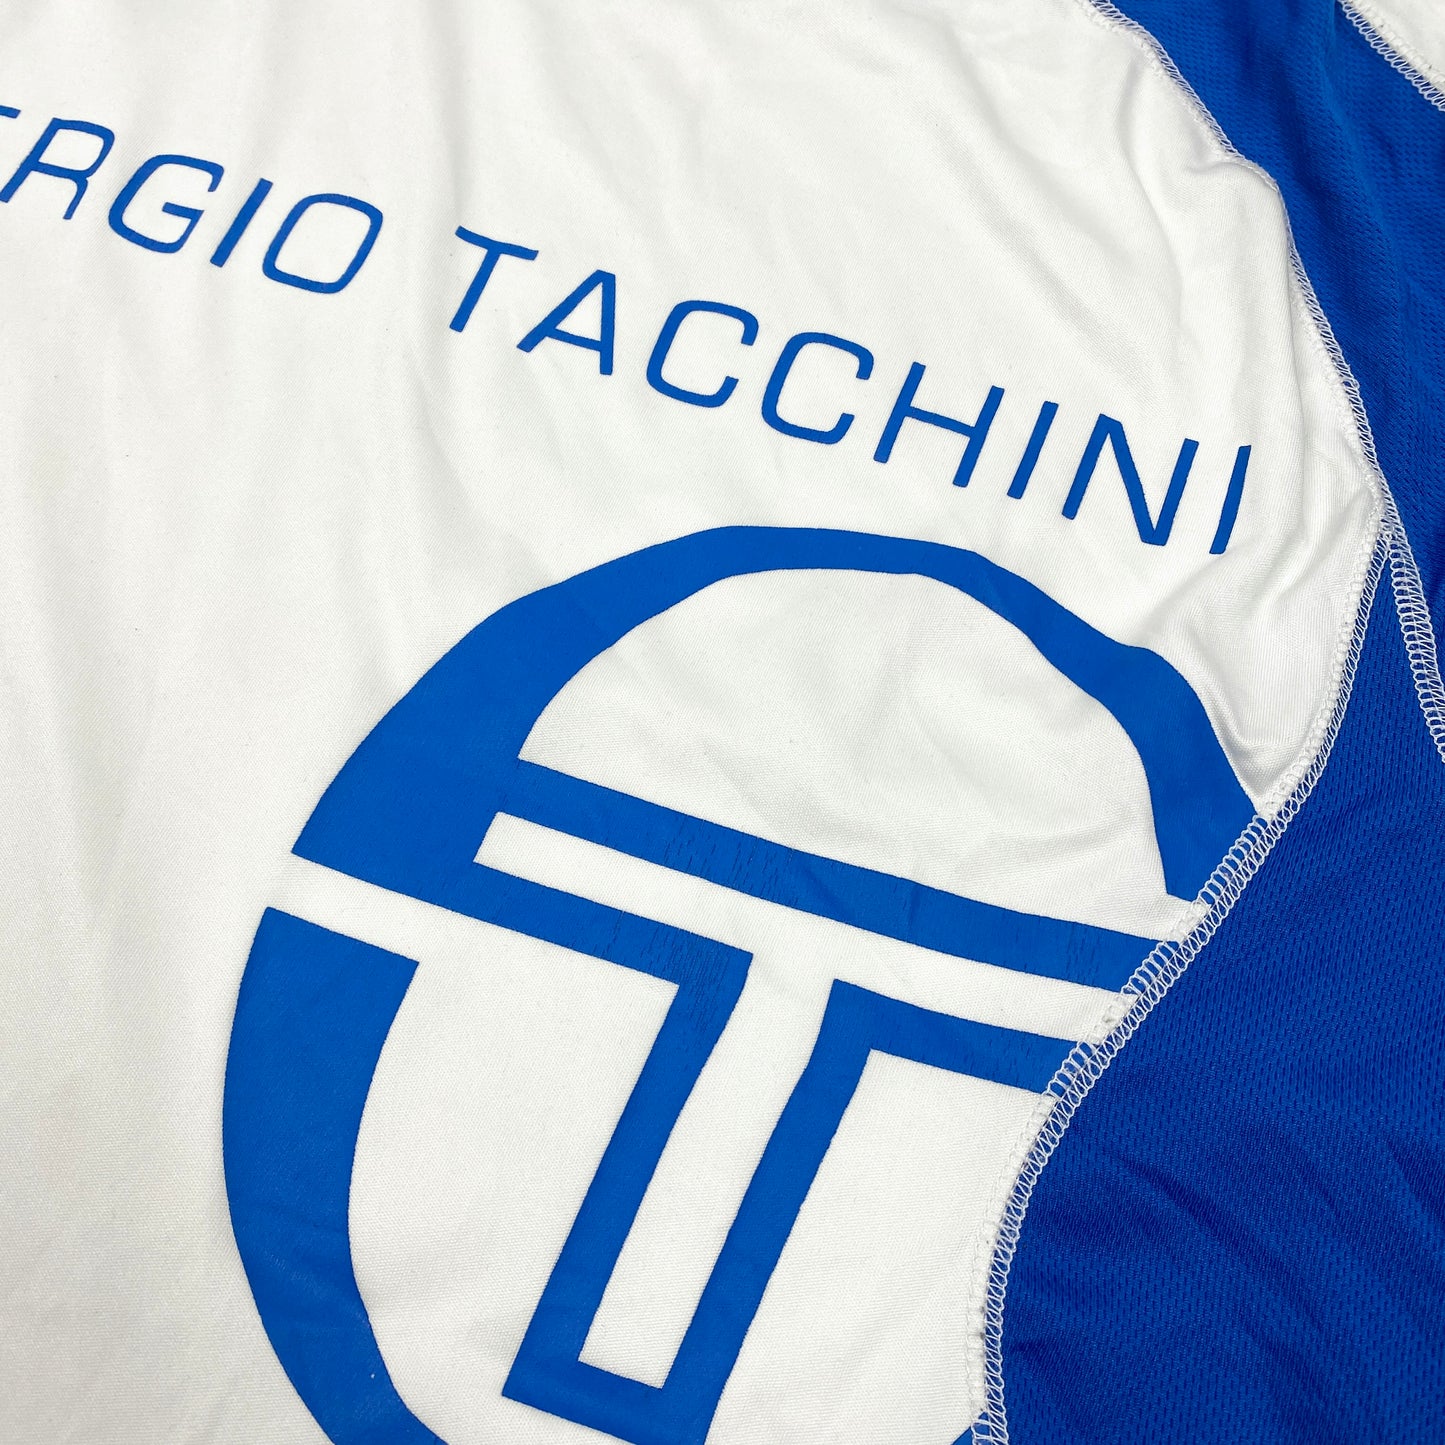 SERGIO TACCHINI Trikot / T-Shirt